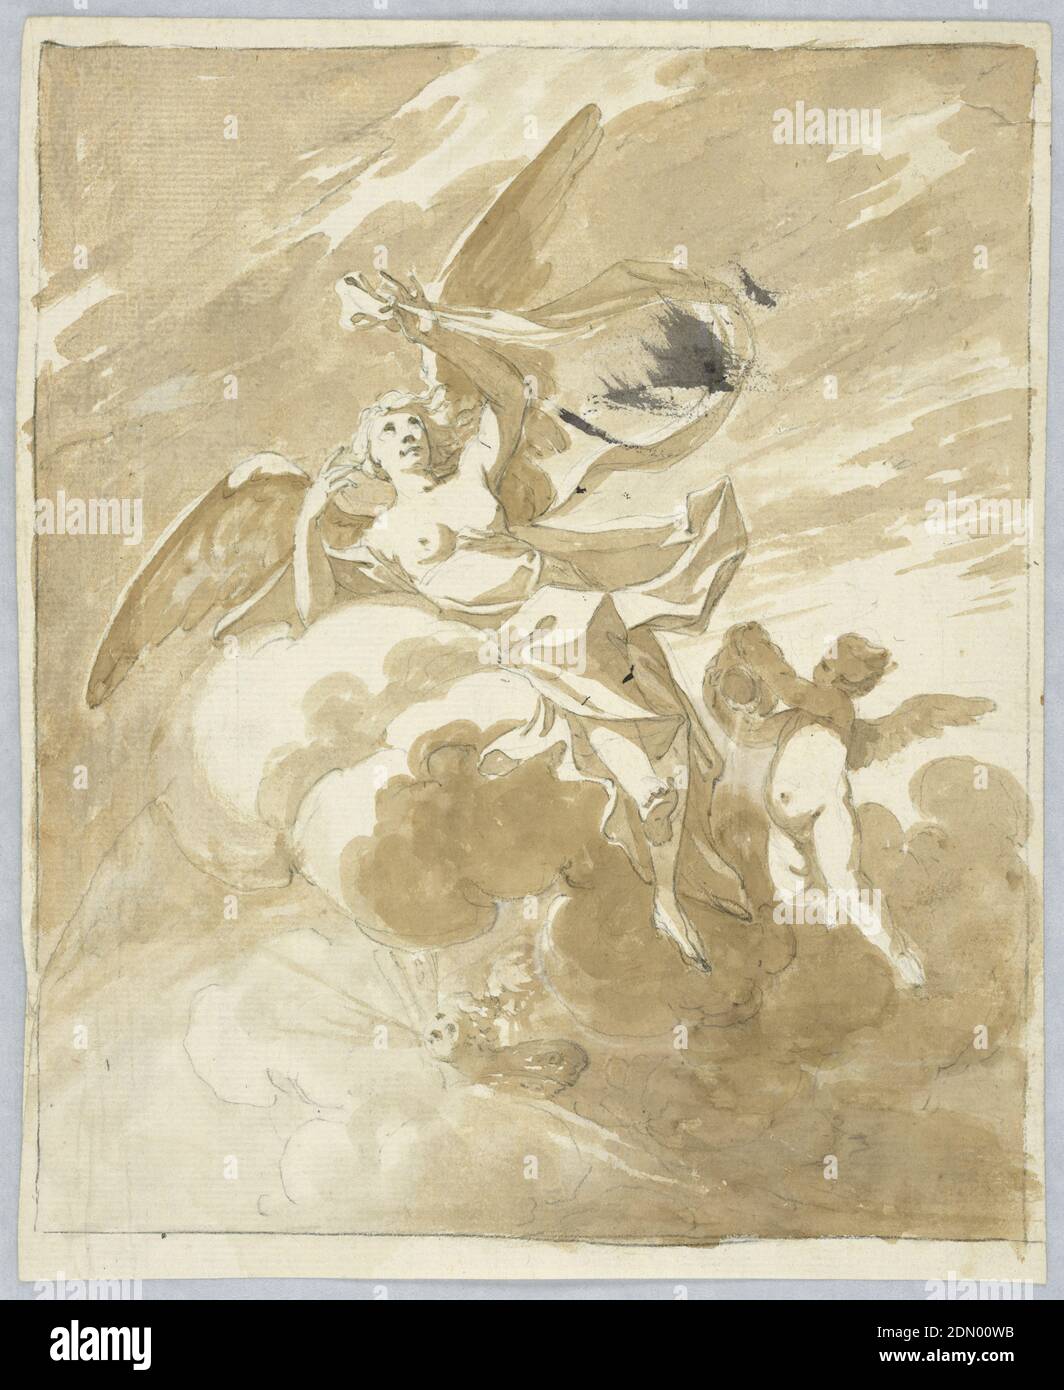 Projekt für eine Decke, Graphit, Pinsel und Tinte auf Papier, Engel in Wolken fliegen mit zwei Figuren weht Wind. Ein Putto neben der Wolke gießt Wasser aus einem Glas. Rahmung Bleistiftlinien., Italien, 1800–1830, Figuren, Zeichnung Stockfoto